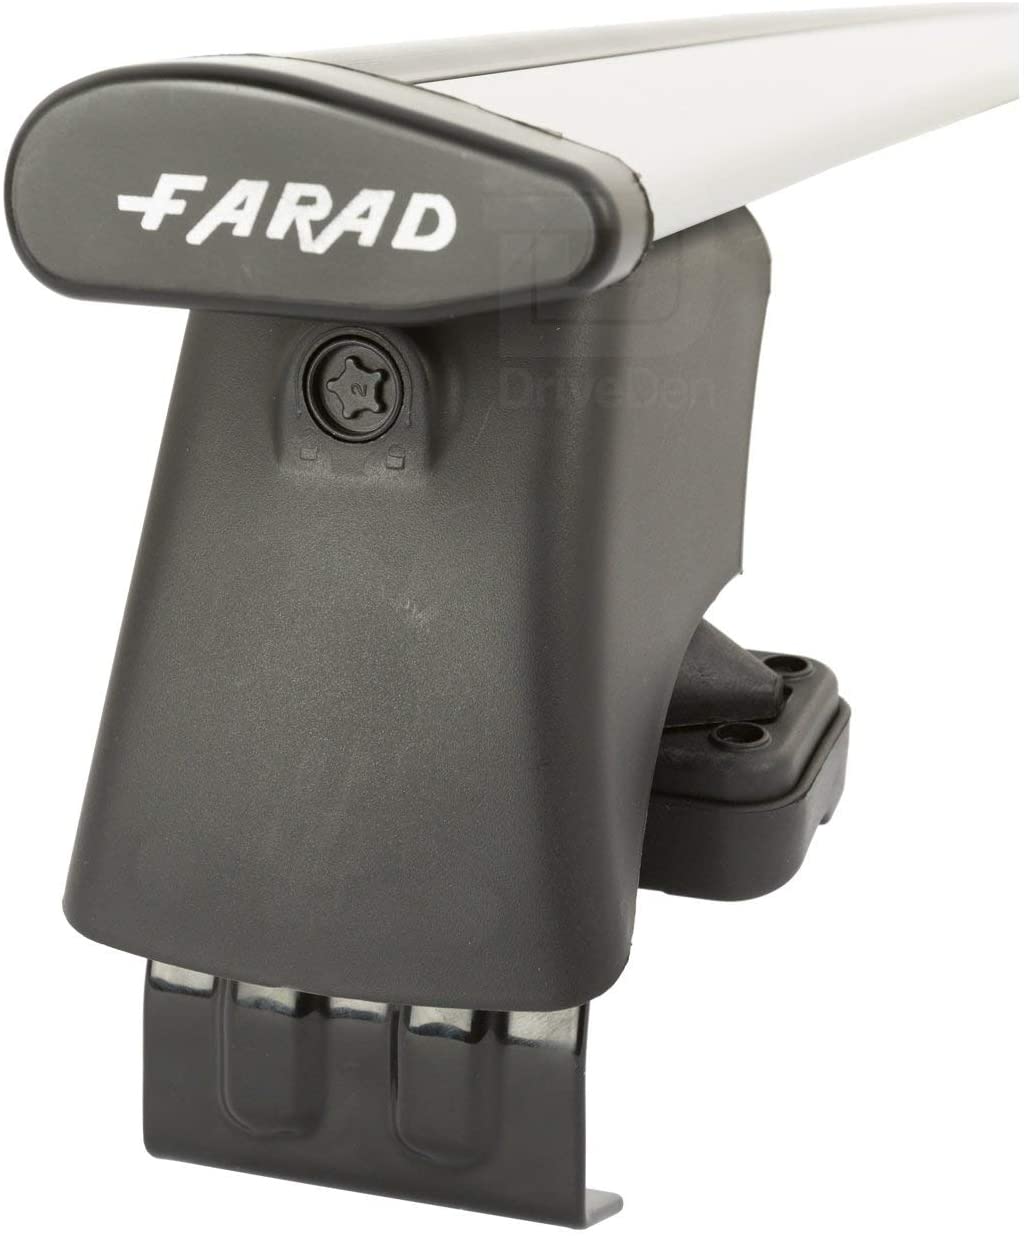 FARAD-Kit H2 per barre portatutto - Toyota Yaris (Xp10) 1999-2005 (senza corrimano)